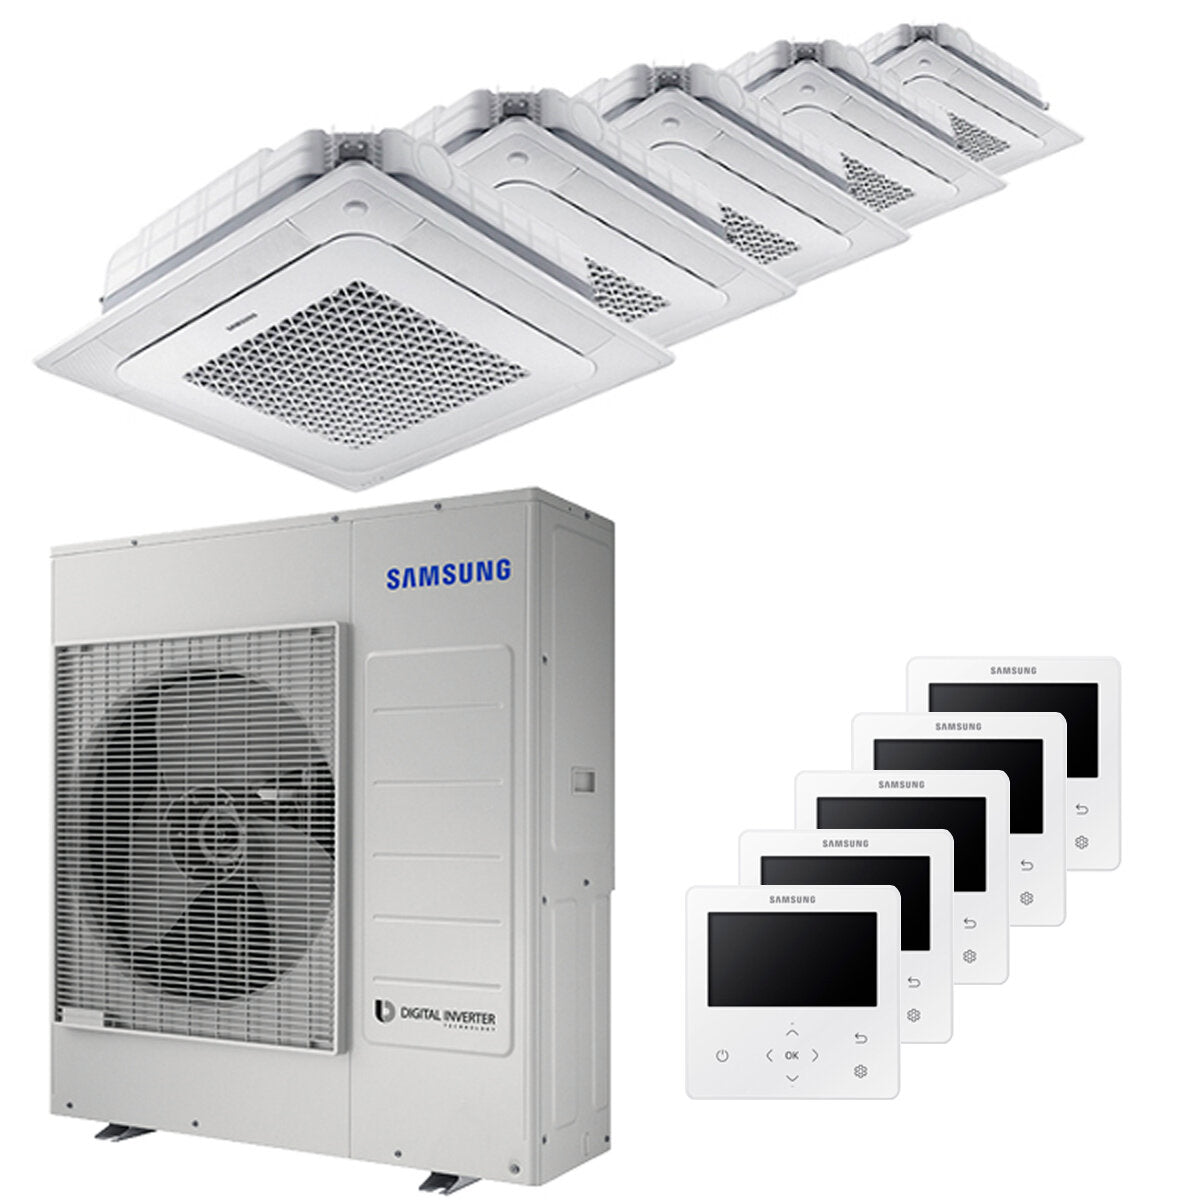 Samsung Climatiseur Windfree 4 voies penta split 7000 + 9000 + 9000 + 9000 + 12000 BTU inverter A++ unité extérieure 10,0 kW